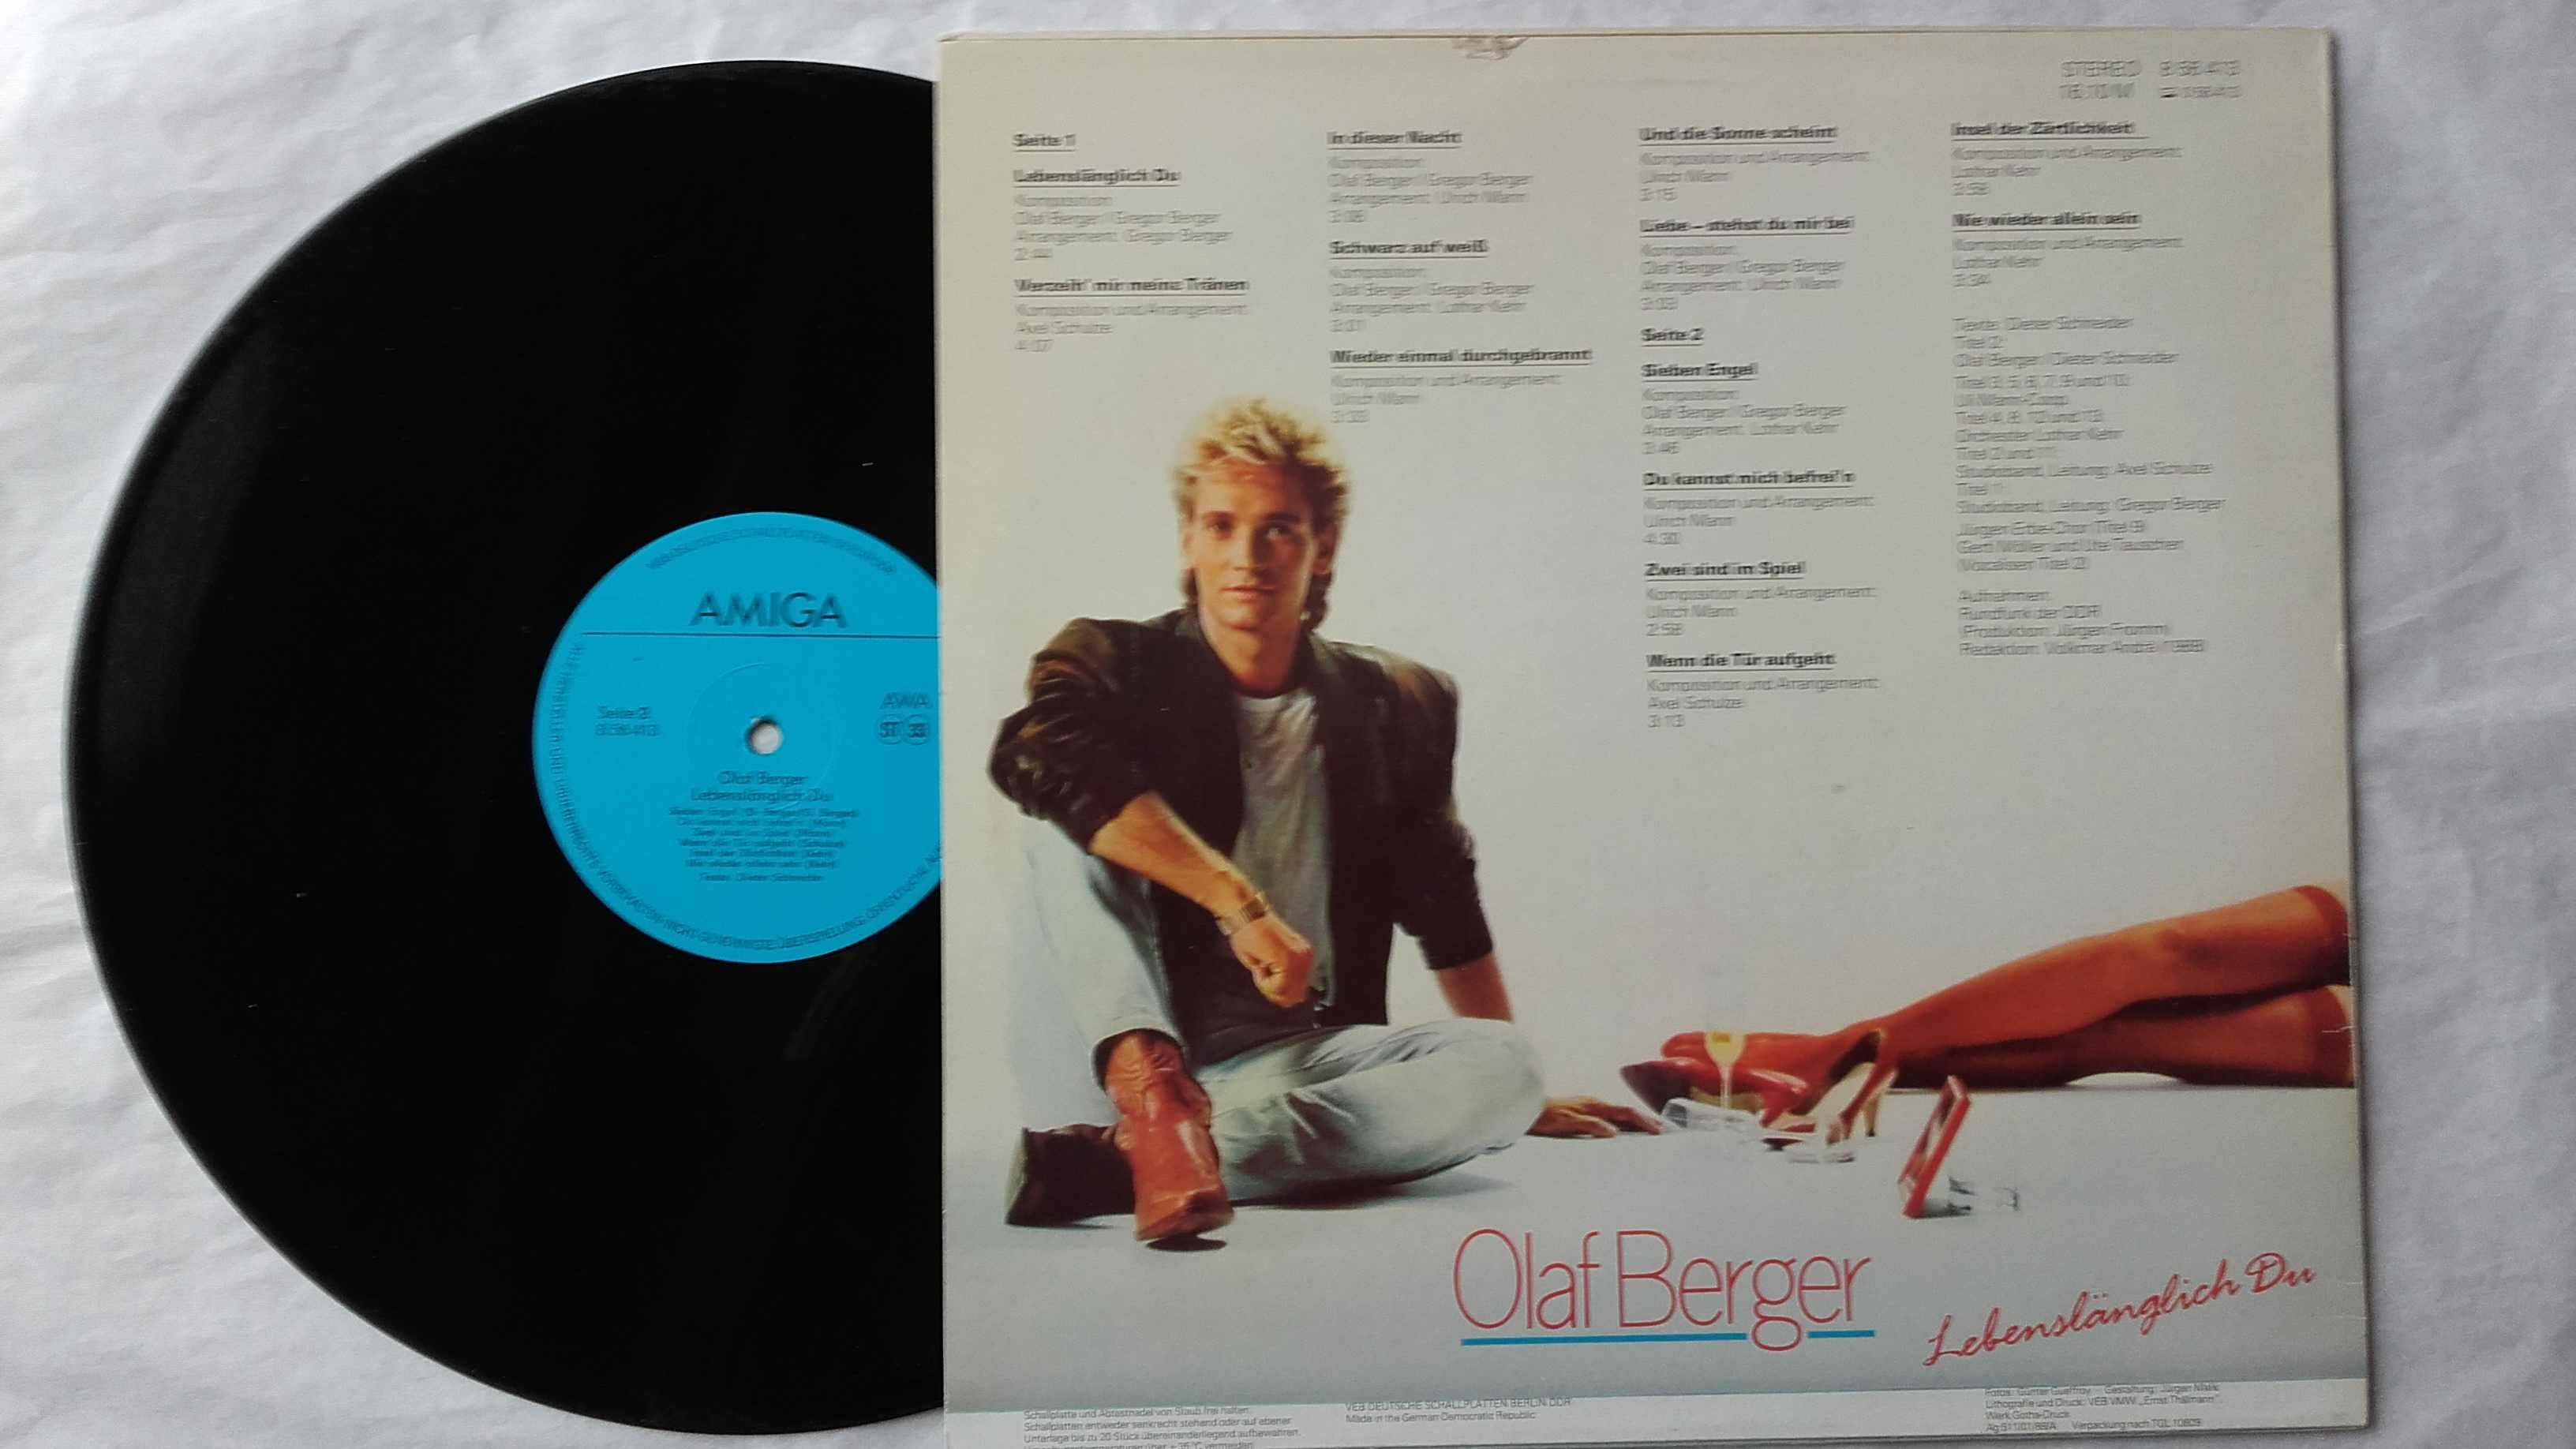 Płyta Olaf Berger winyl 1989 r.